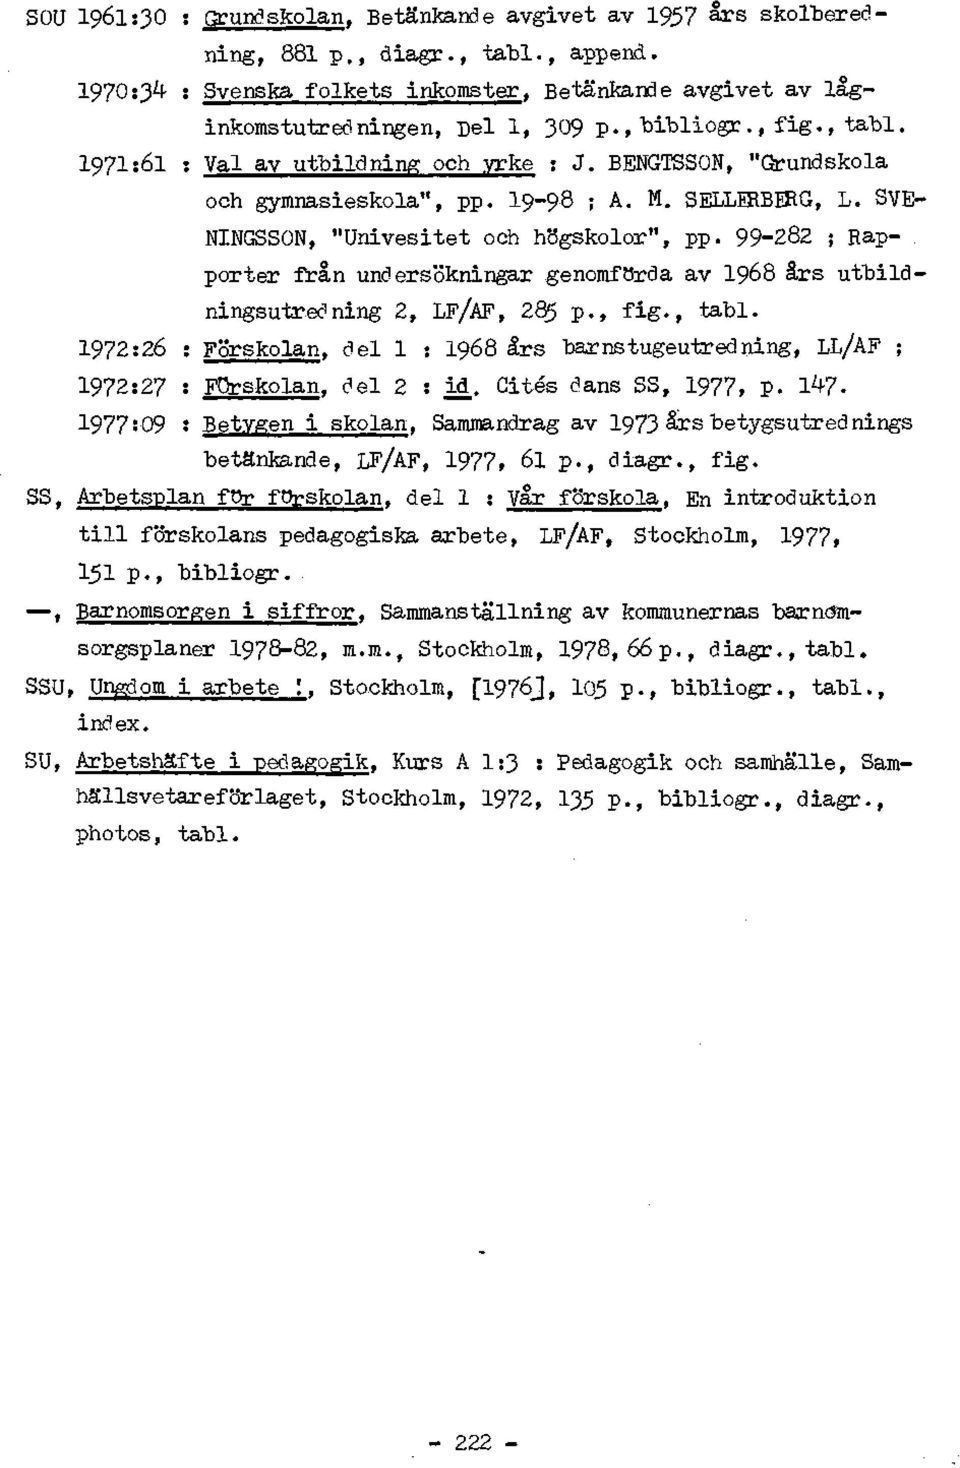 99-282 ; Rap-. porter frân undersokningar genomforda av 1968 ârs utbildningsutredning 2, LF/AF, 285 p., fig., tabl.